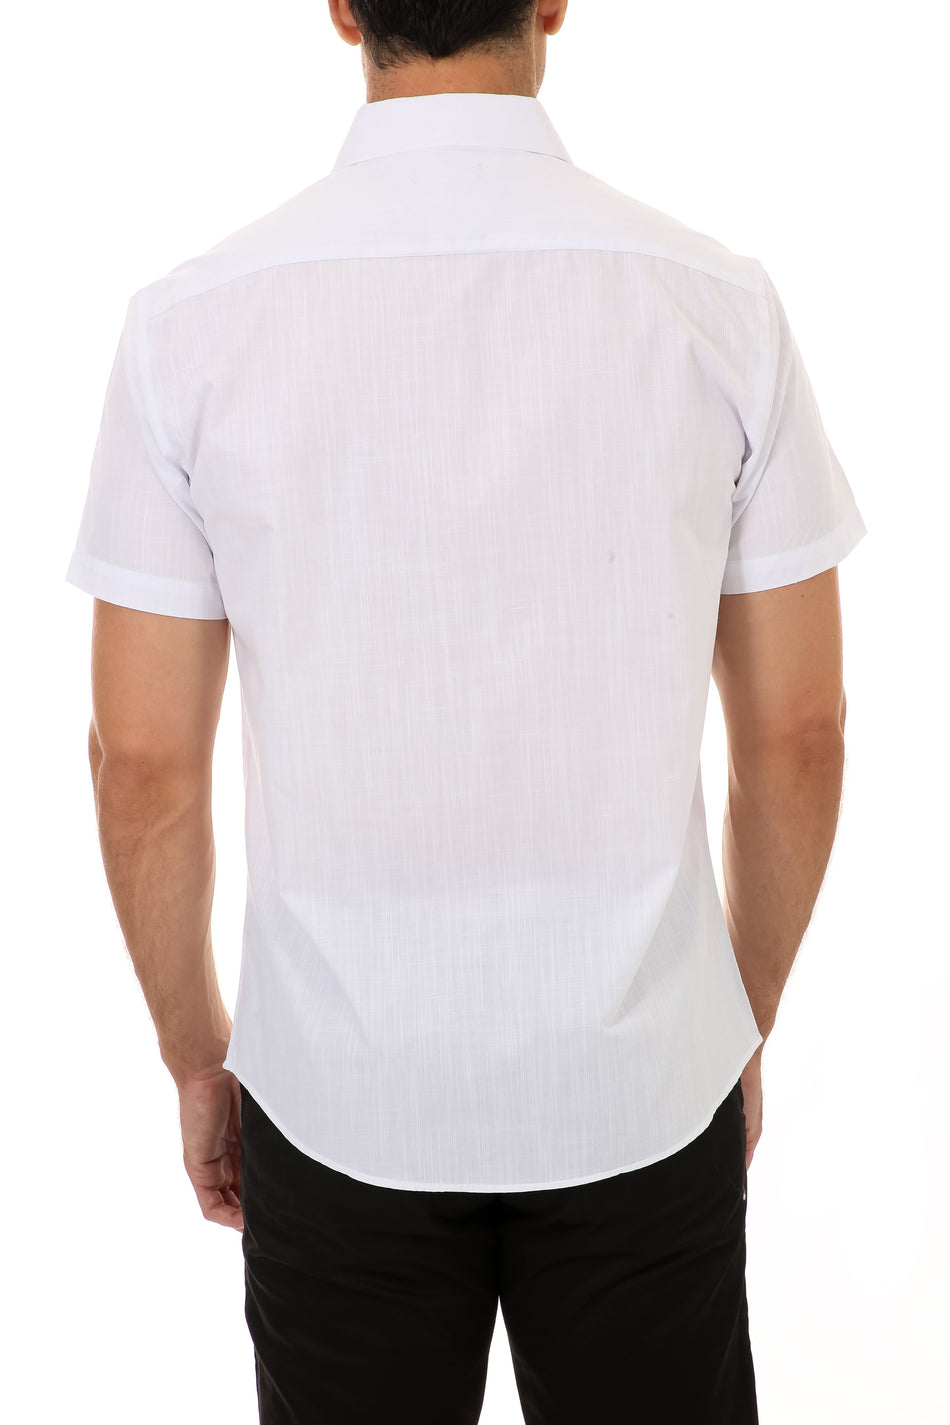 BESPOKE - Mens White Button Up Short Sleeve Dress Shirt - Modern Fit ...